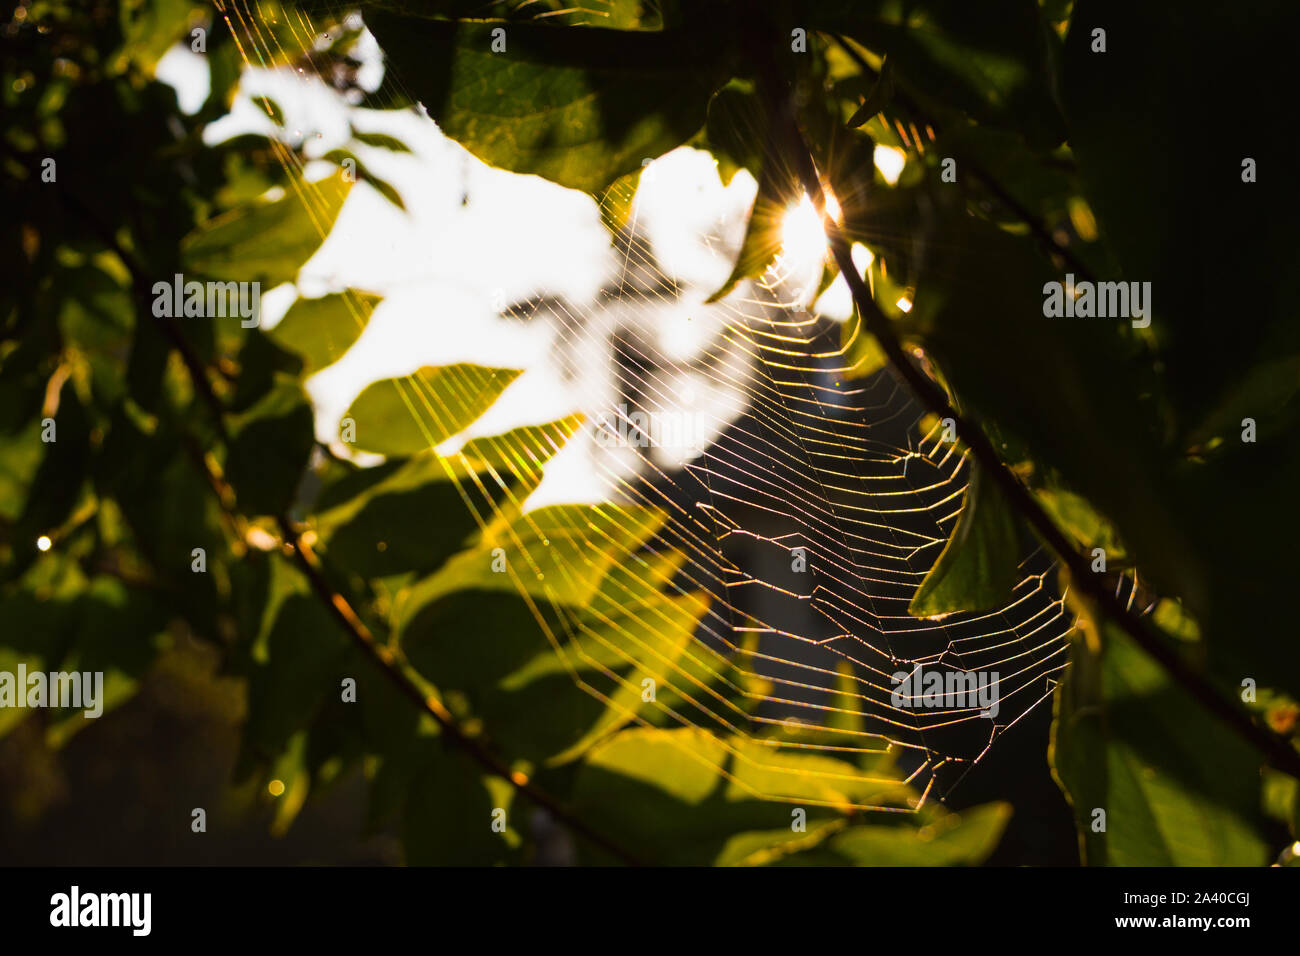 Spinnennetz in der Sonne Stock Photo